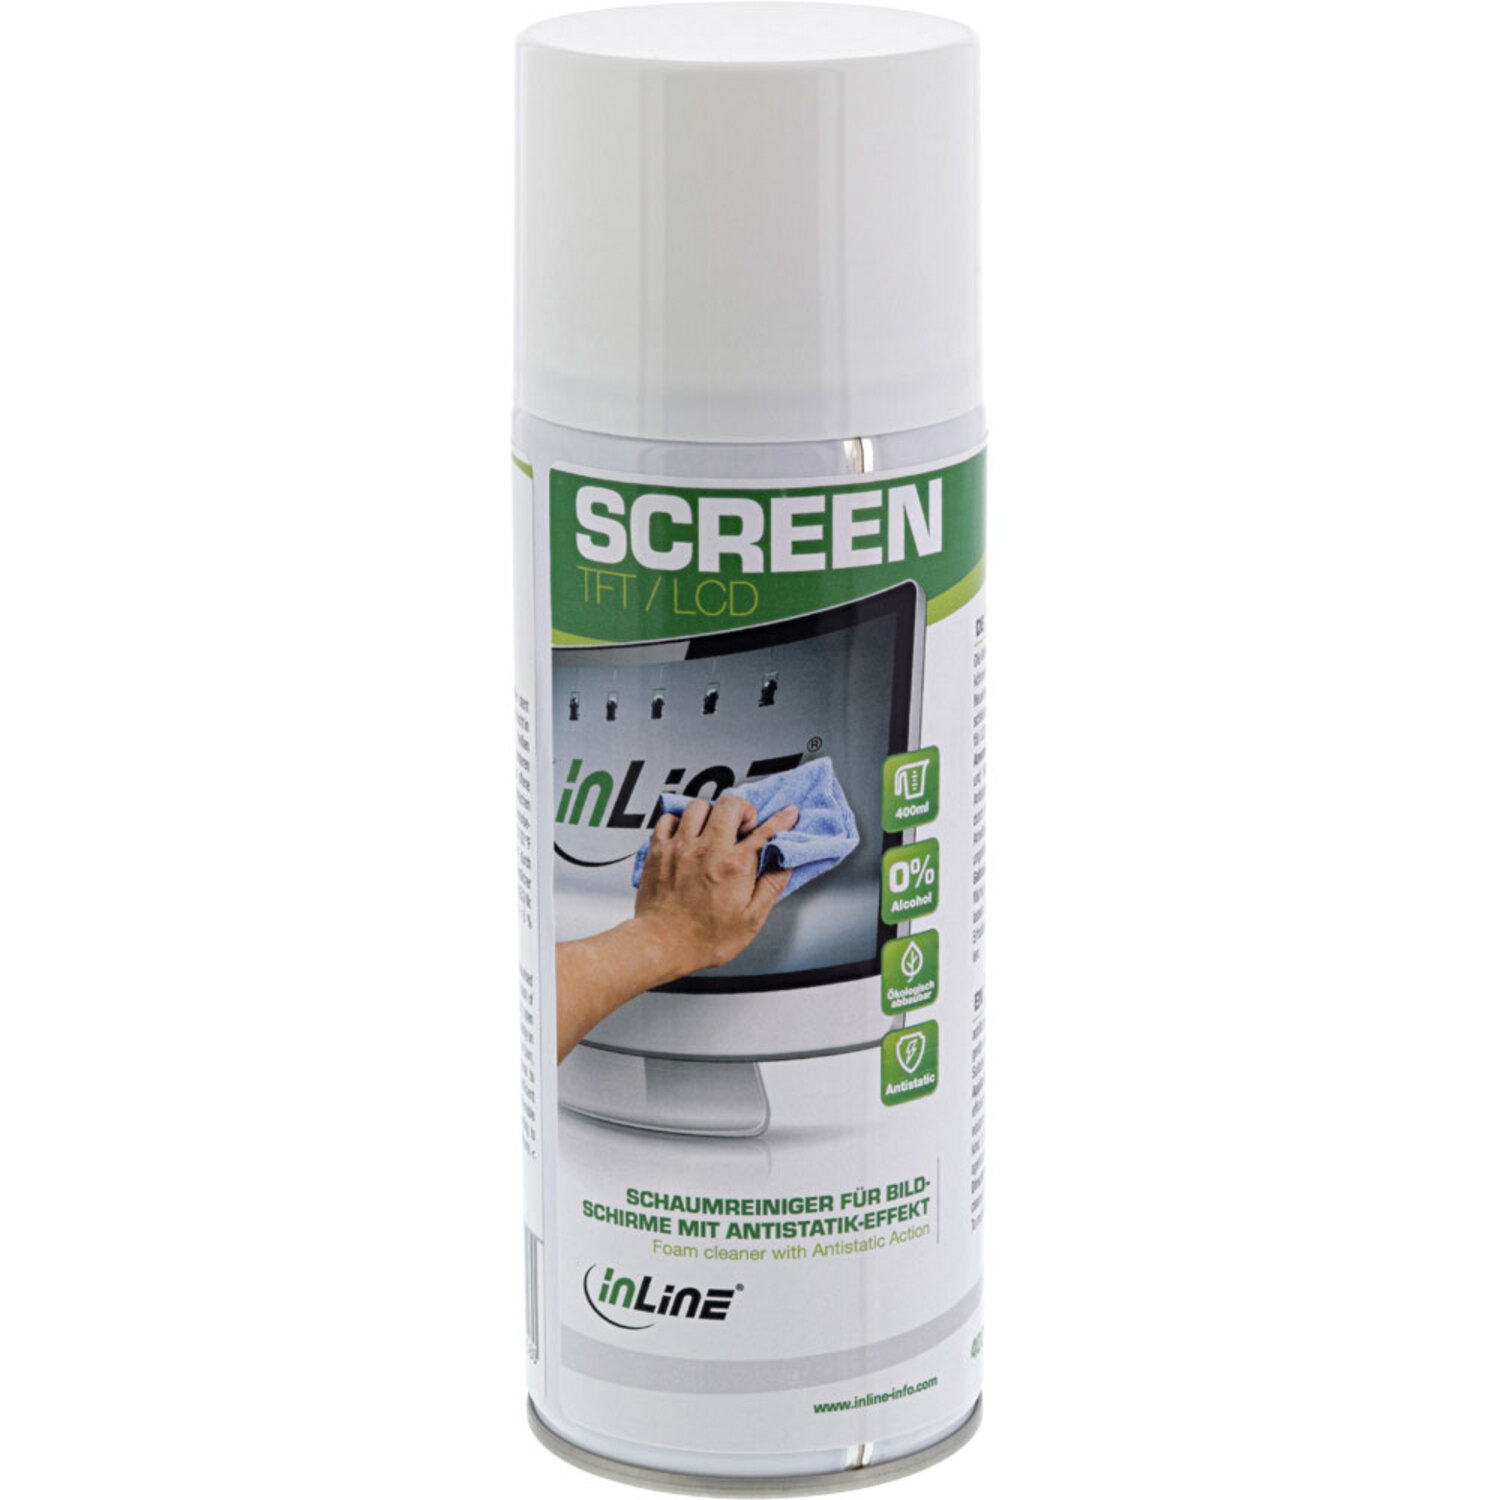 INLINE InLine® Schaumreiniger 400ml Bildschirme für mit Reinigung Antistatik-Effekt